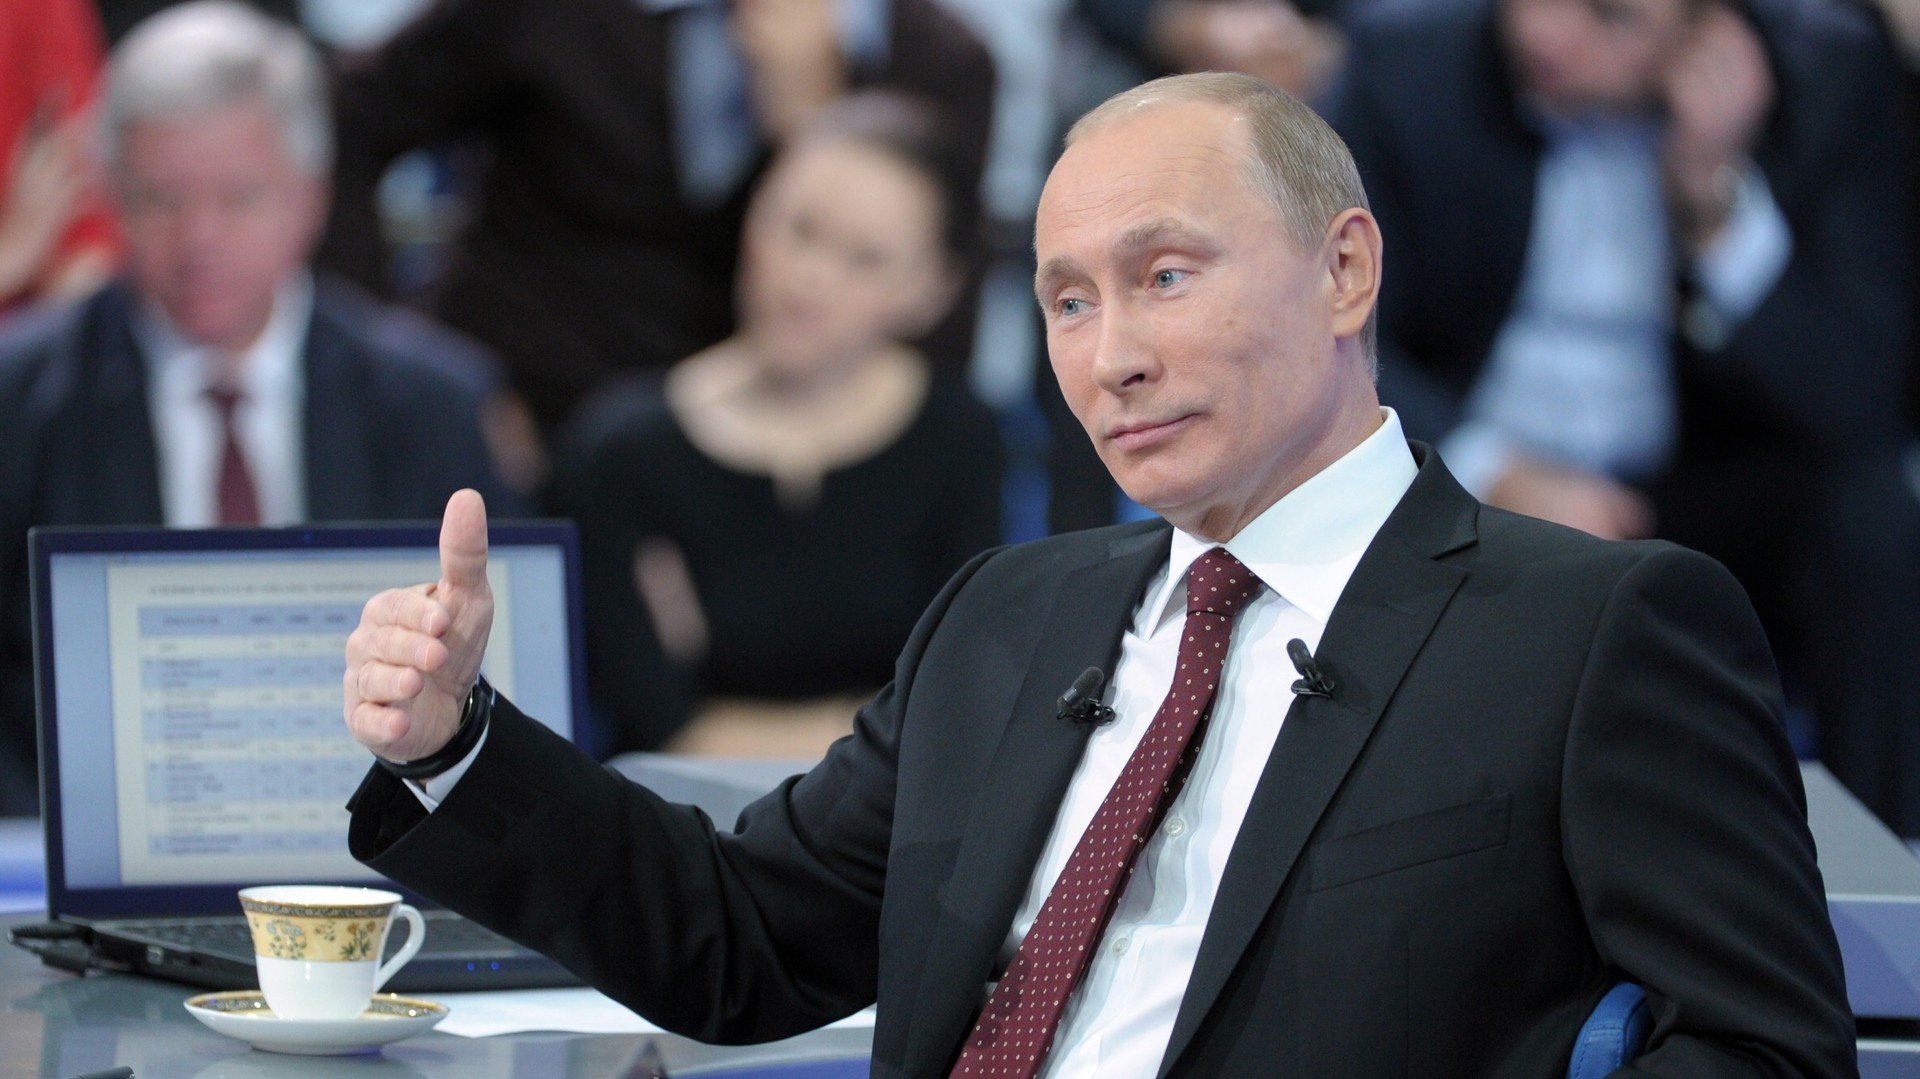 Les 10 moments les plus marquants des sessions annuelles de questions-réponses à Poutine